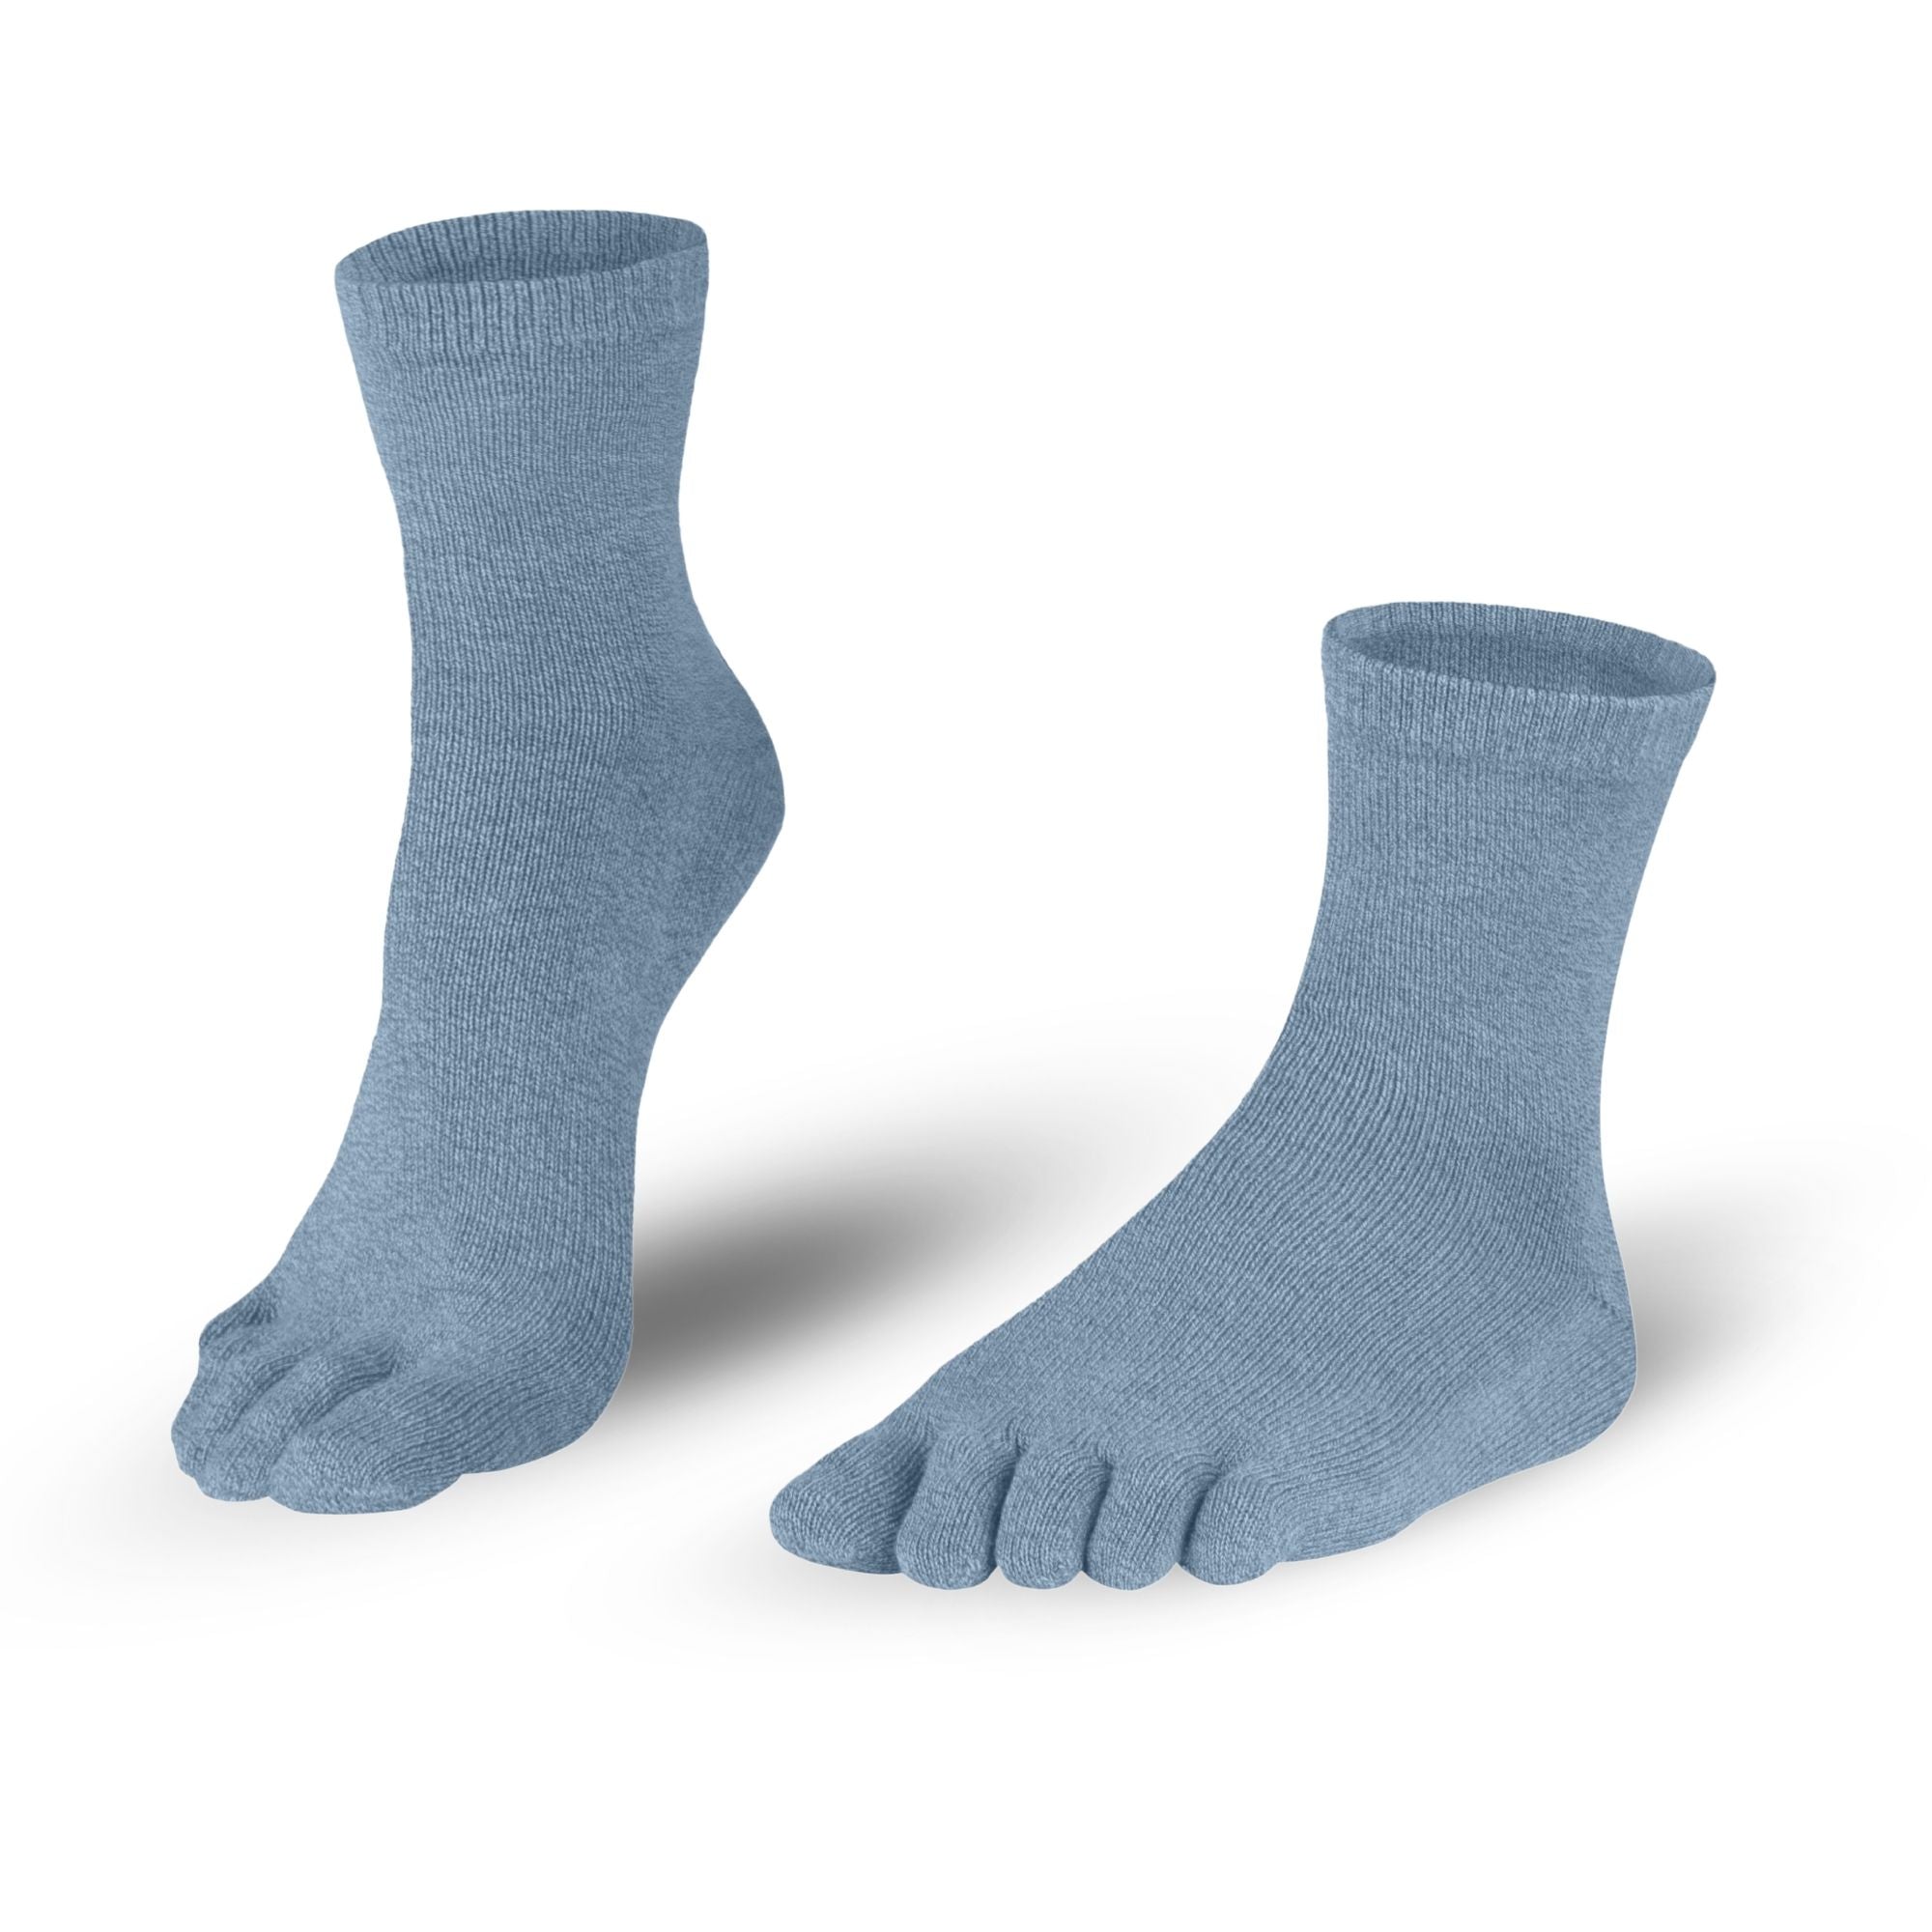 Chaussettes en cotonchaussettes à orteils en bleu-gris pour femmes et hommes